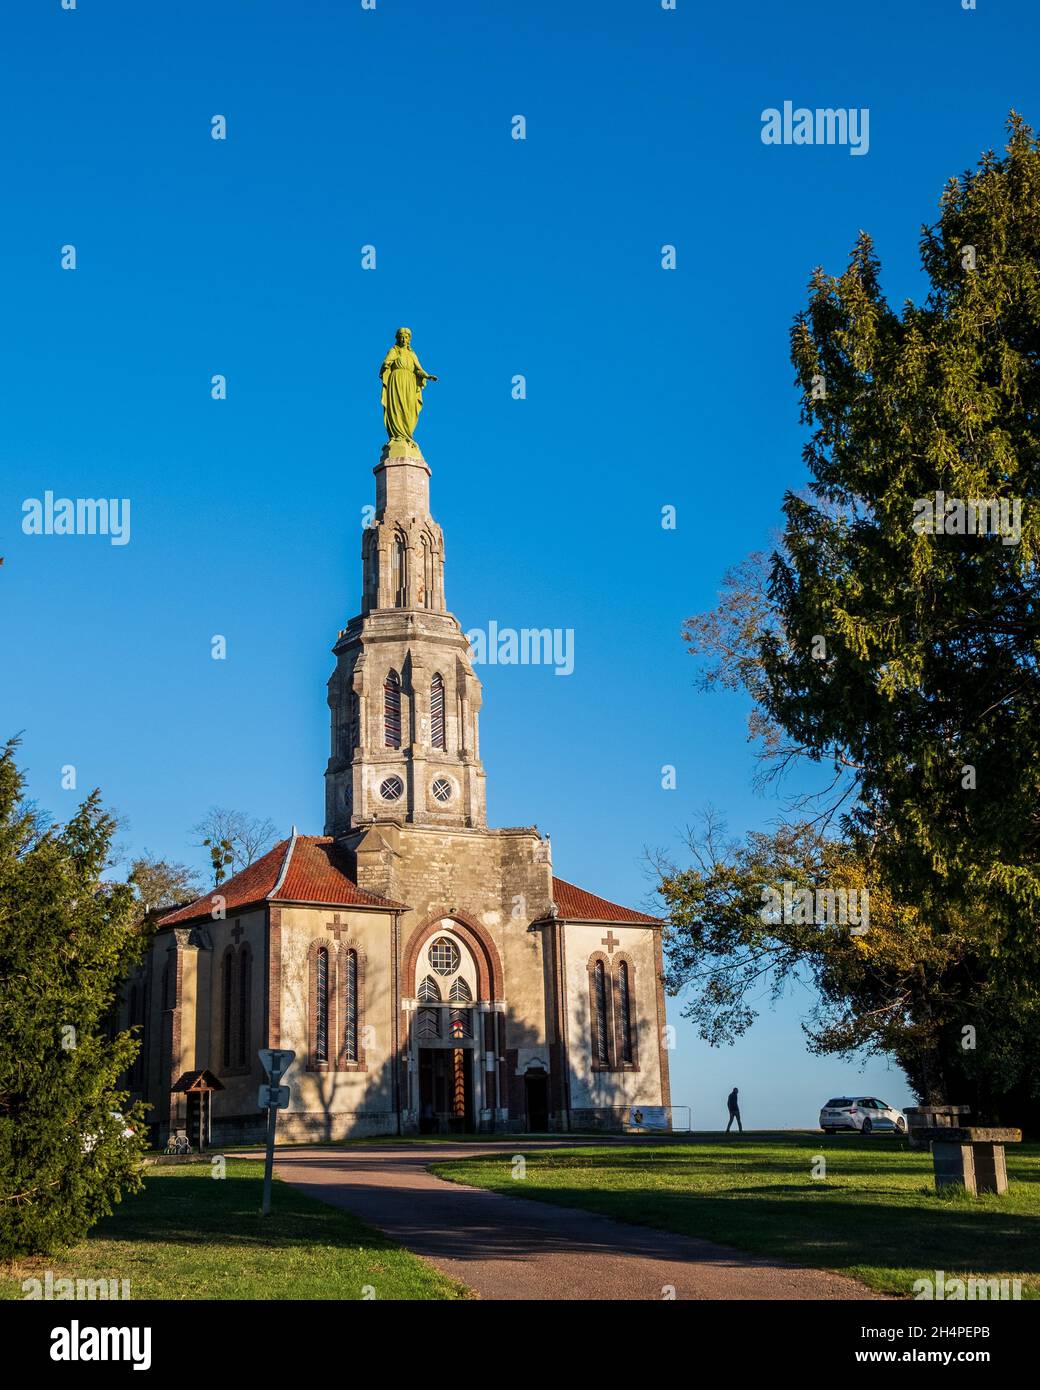 Chapelle Saint Joseph des Anges auf einem Hügel außerhalb von Villeneuve-au-Chemin, Frankreich, mit einer gusseisernen Statue der Maria, die auf dem Turm sitzt. Stockfoto